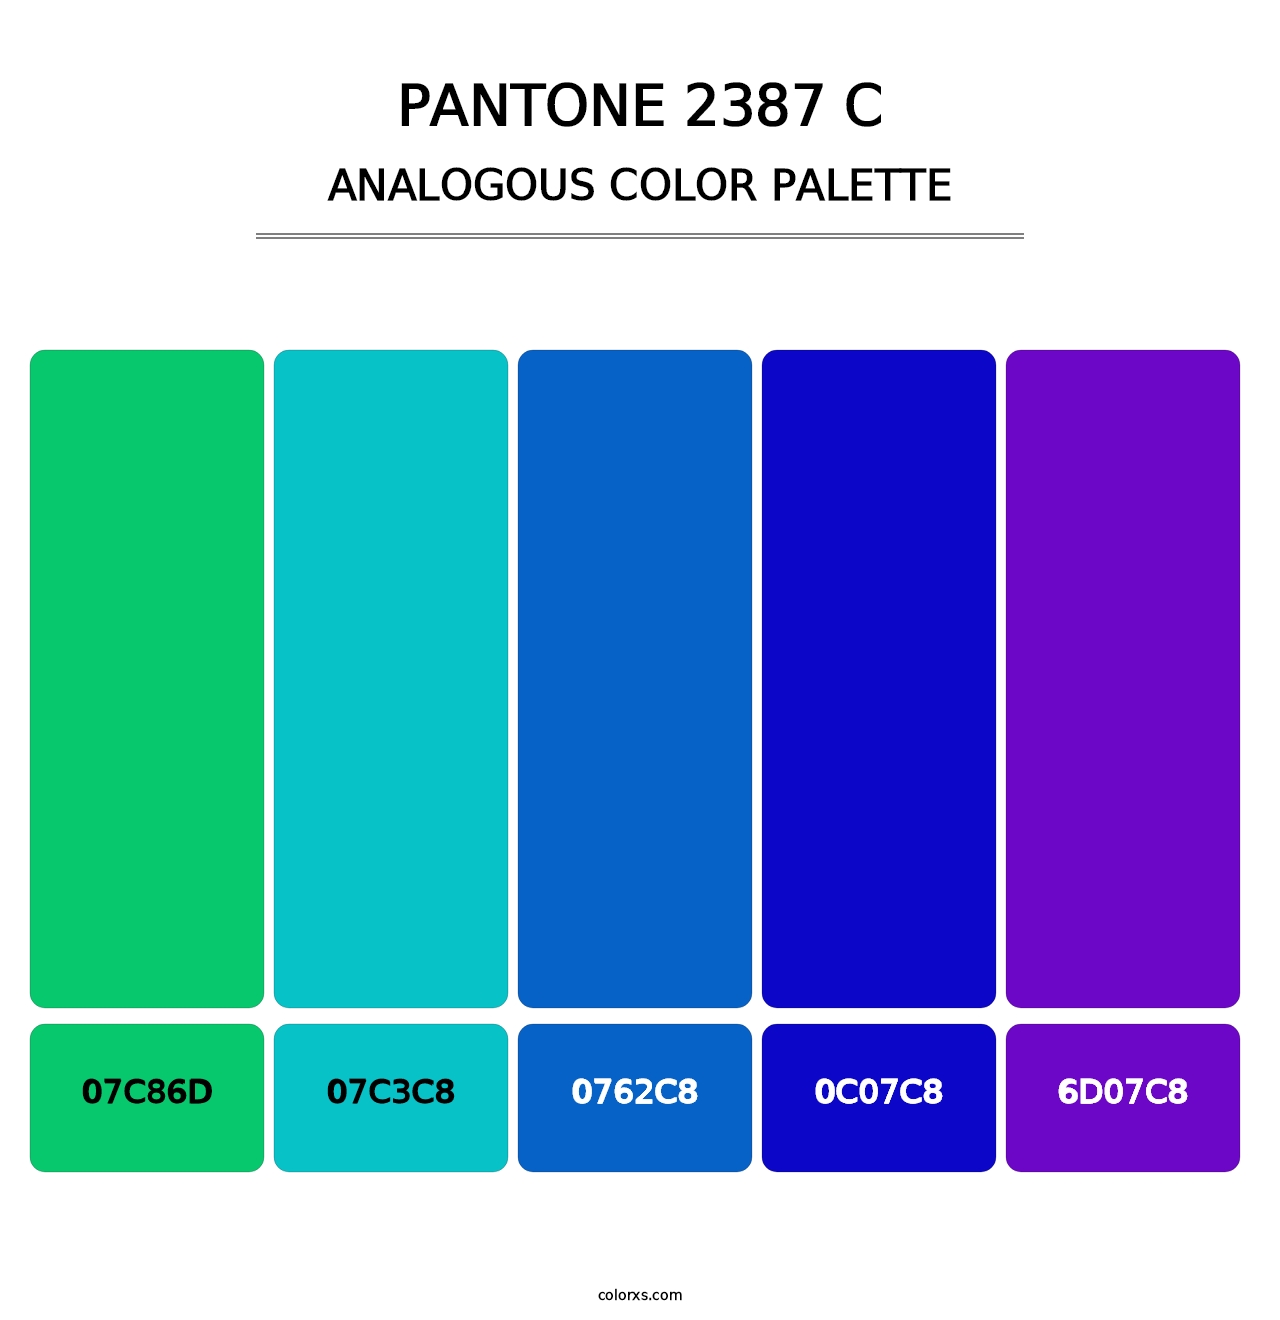 PANTONE 2387 C - Analogous Color Palette